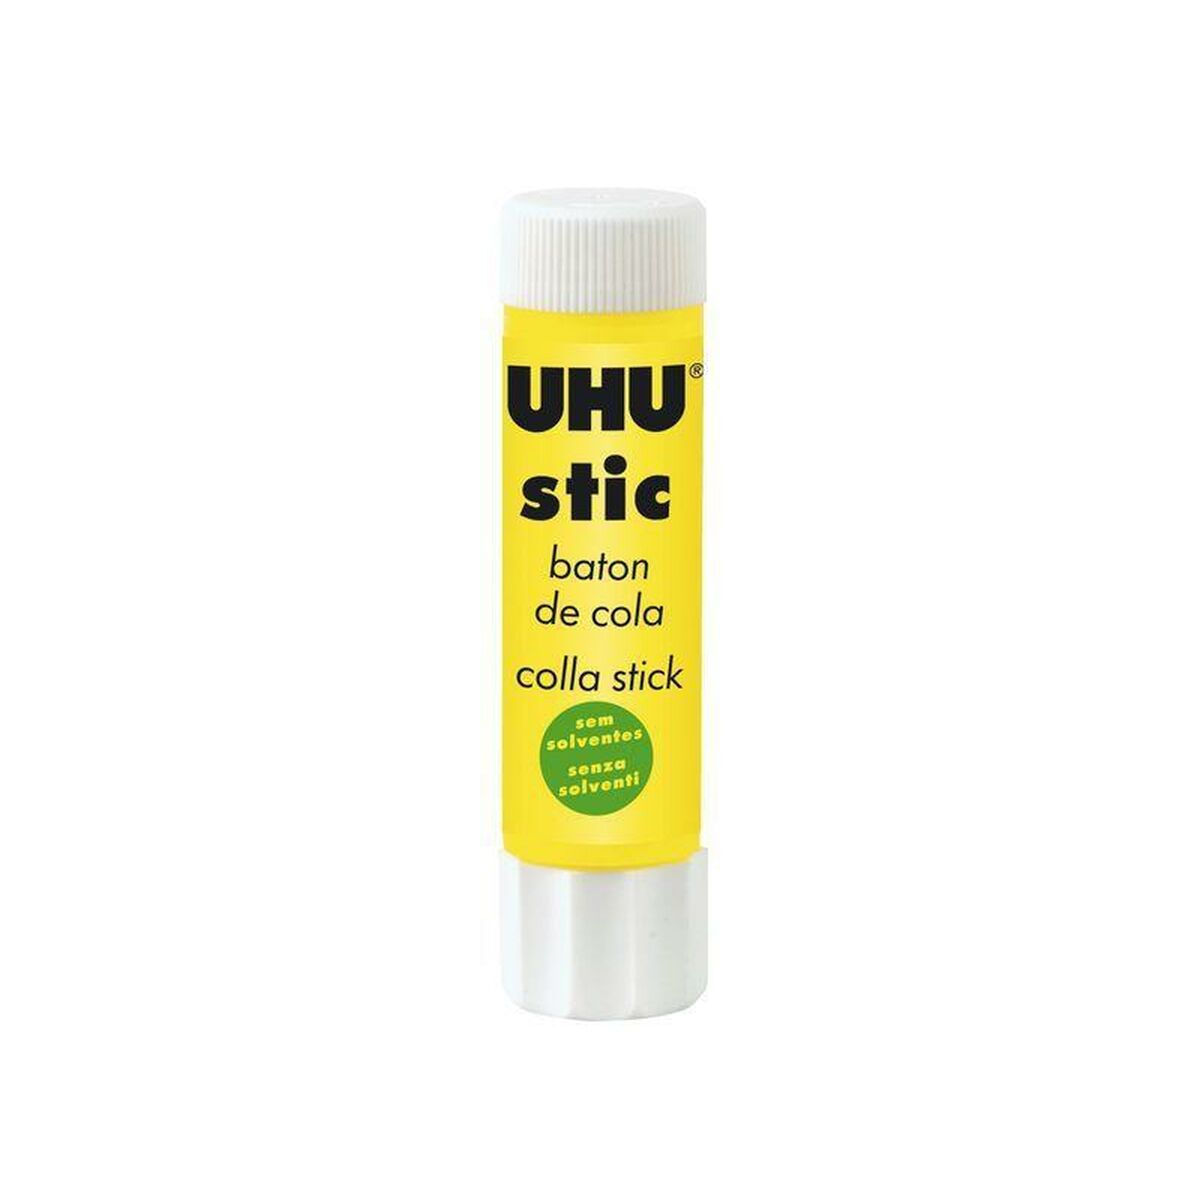 Glue stick UHU 24 Pieces (12 Units)